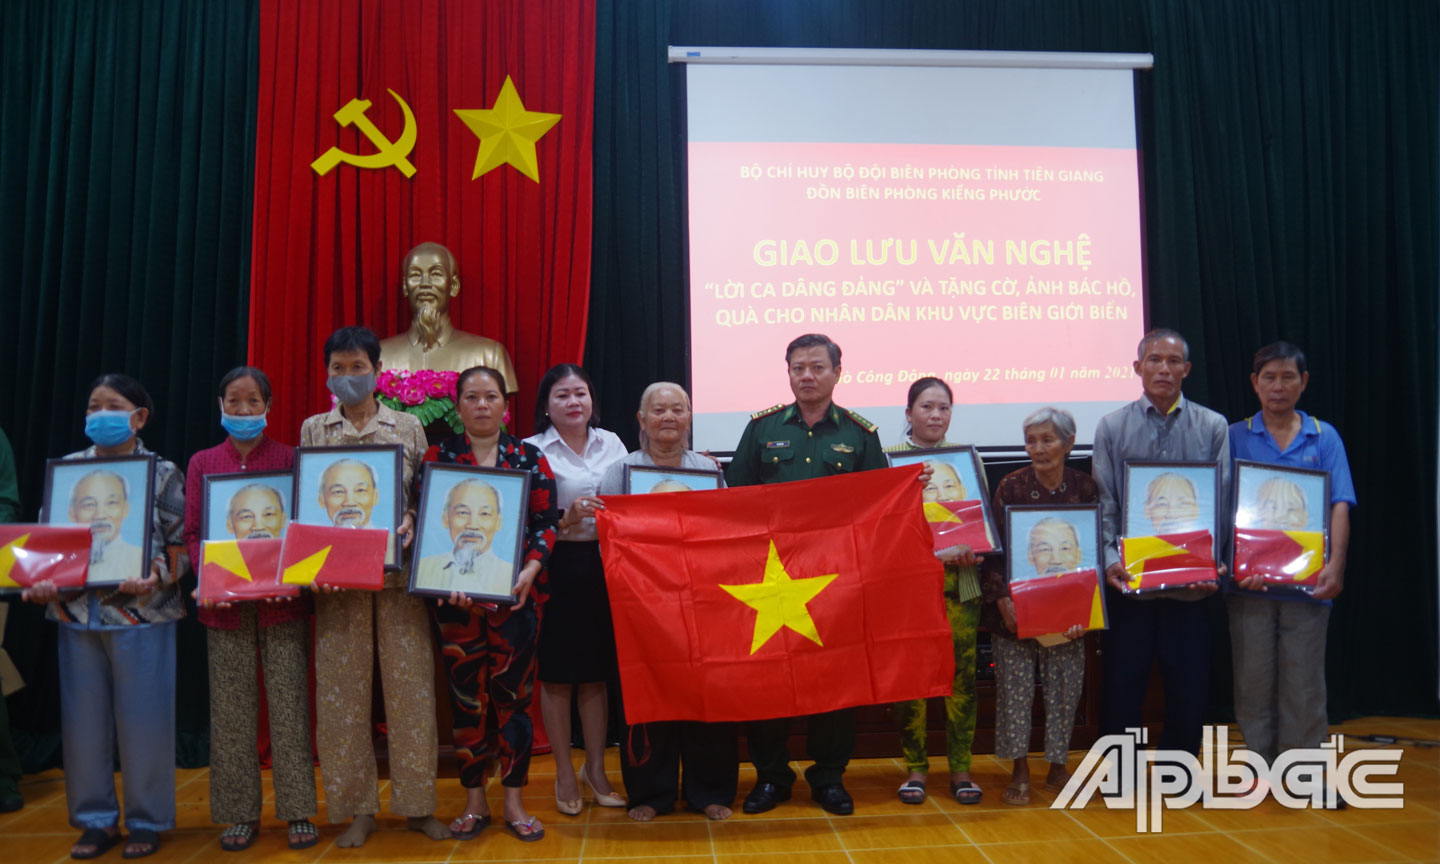 Đại diện lãnh đạo Bộ Chỉ huy BĐBP Tiền Giang, huyện Gò Công Đông và Đồn Biên phòng Kiểng Phước trao tặng cờ Tổ quốc, ảnh Bác cho các chủ phương tiện khai thác thủy sản và nhân dân trên khu vực biên giới biển.